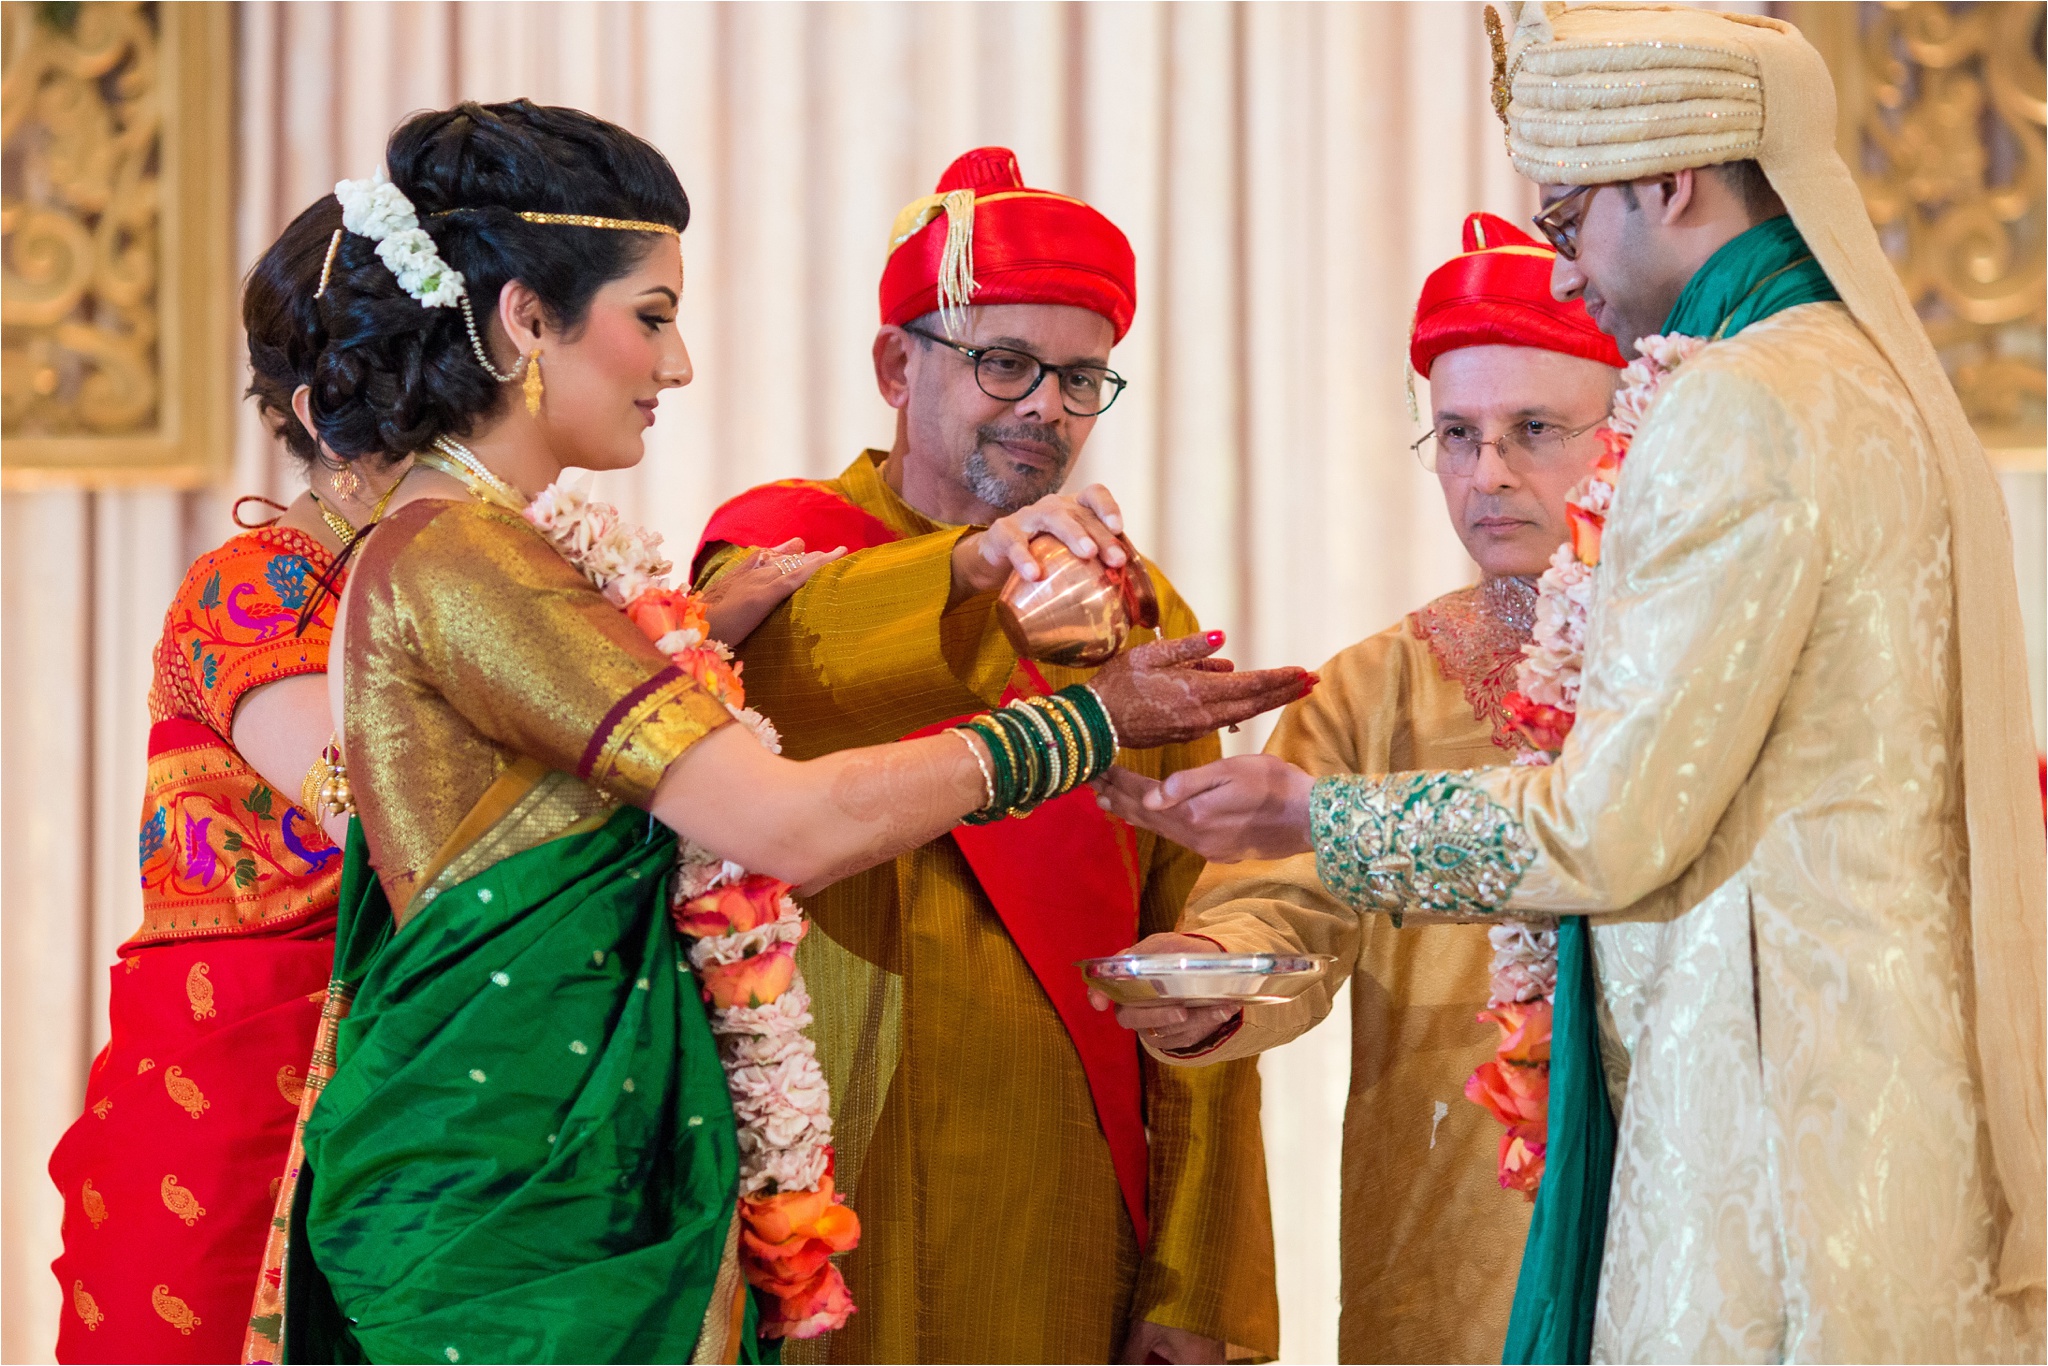 SanJose_Fairmont_Indian_Wedding_0051.jpg